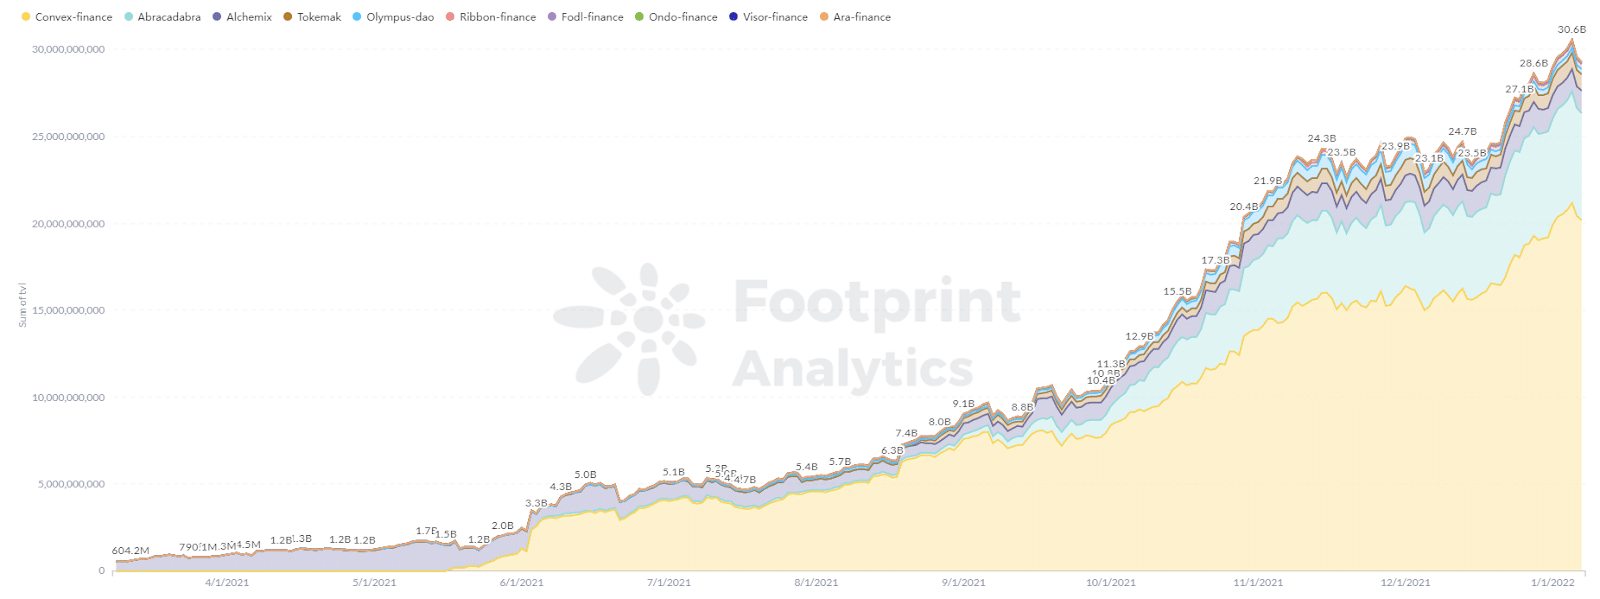 Footprint Analytics - TVL projektów DeFi 2.0 wzrósł z 0 do 30 miliardów w 2021 roku